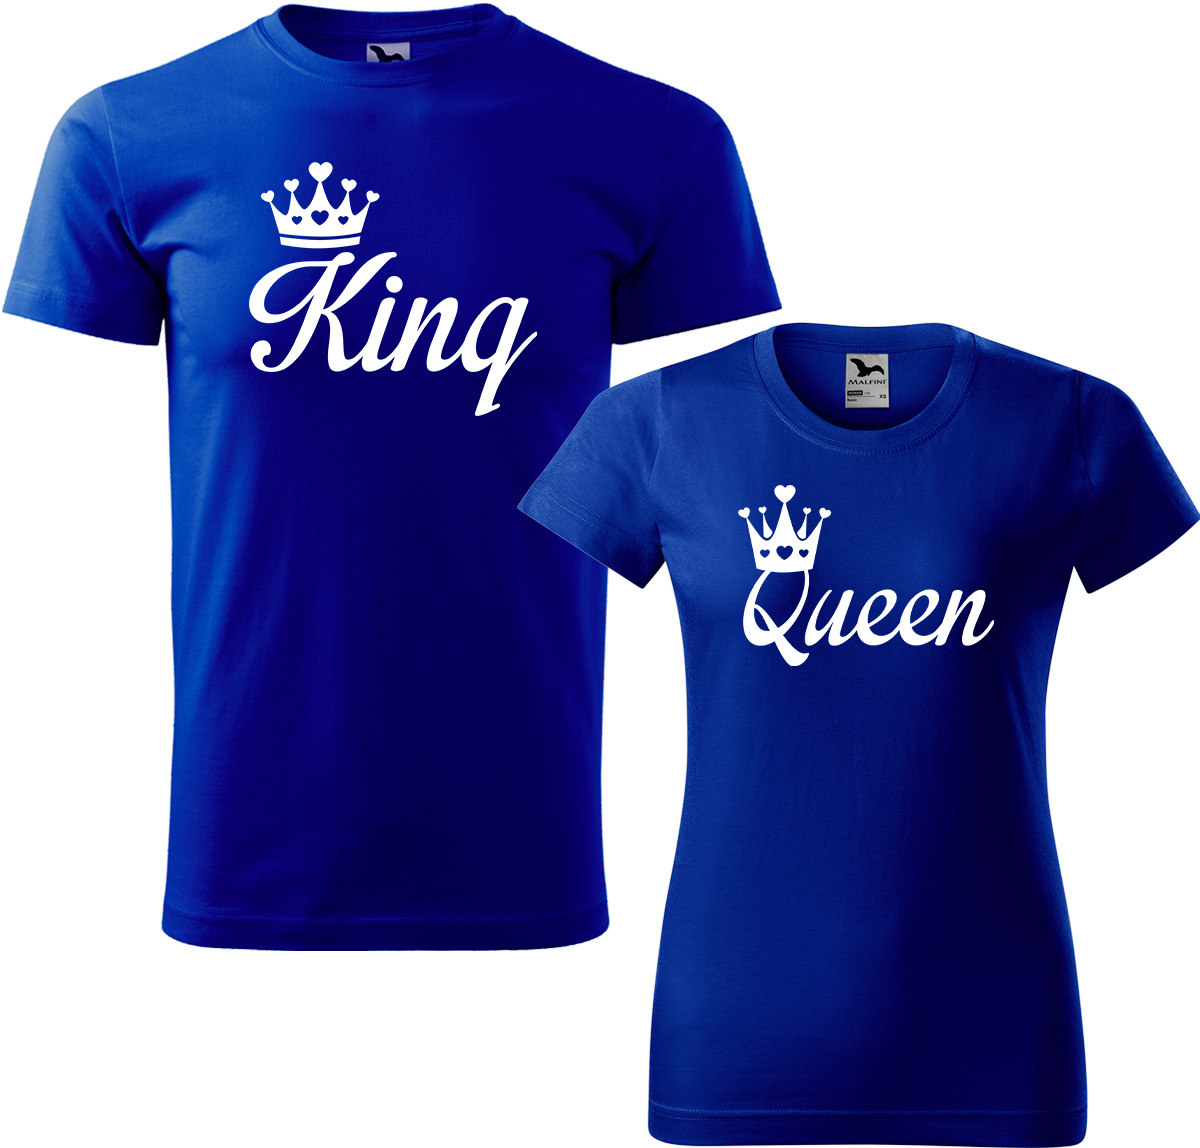 Trička pro páry - King a queen Barva: Královská modrá (05), Velikost dámské tričko: S, Velikost pánské tričko: L